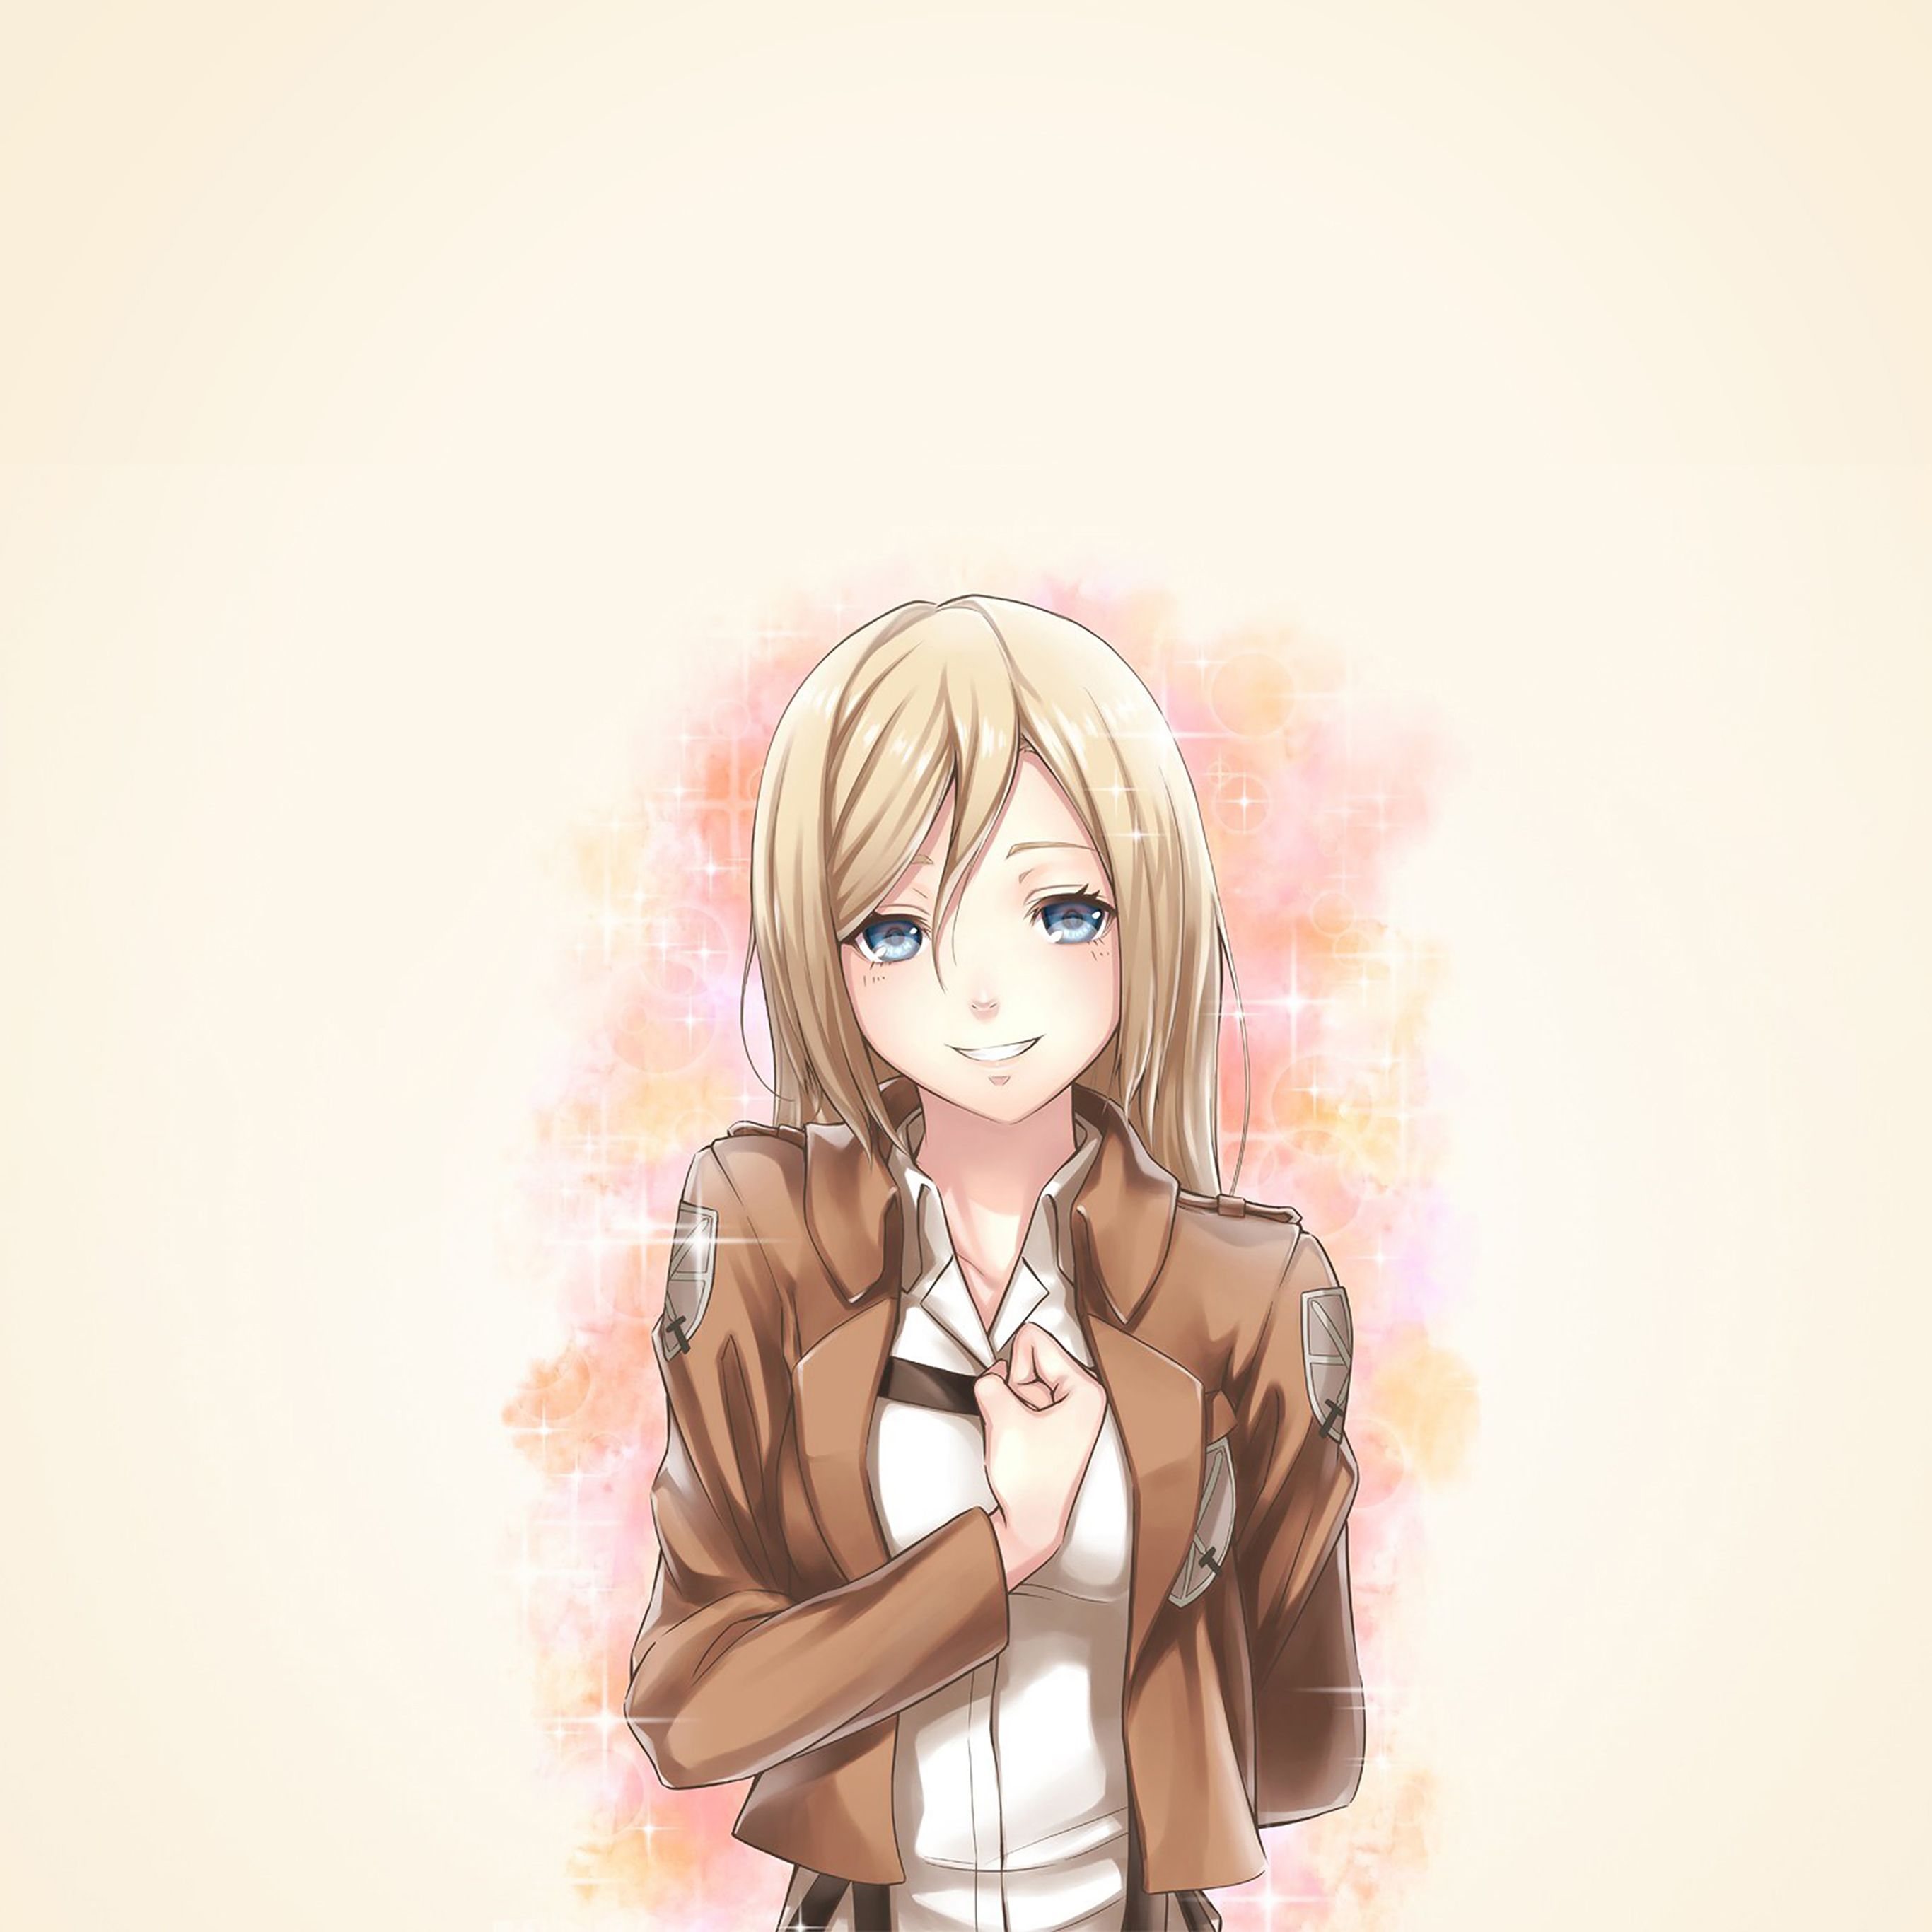 Android wallpaper. blonde anime girl illustration art